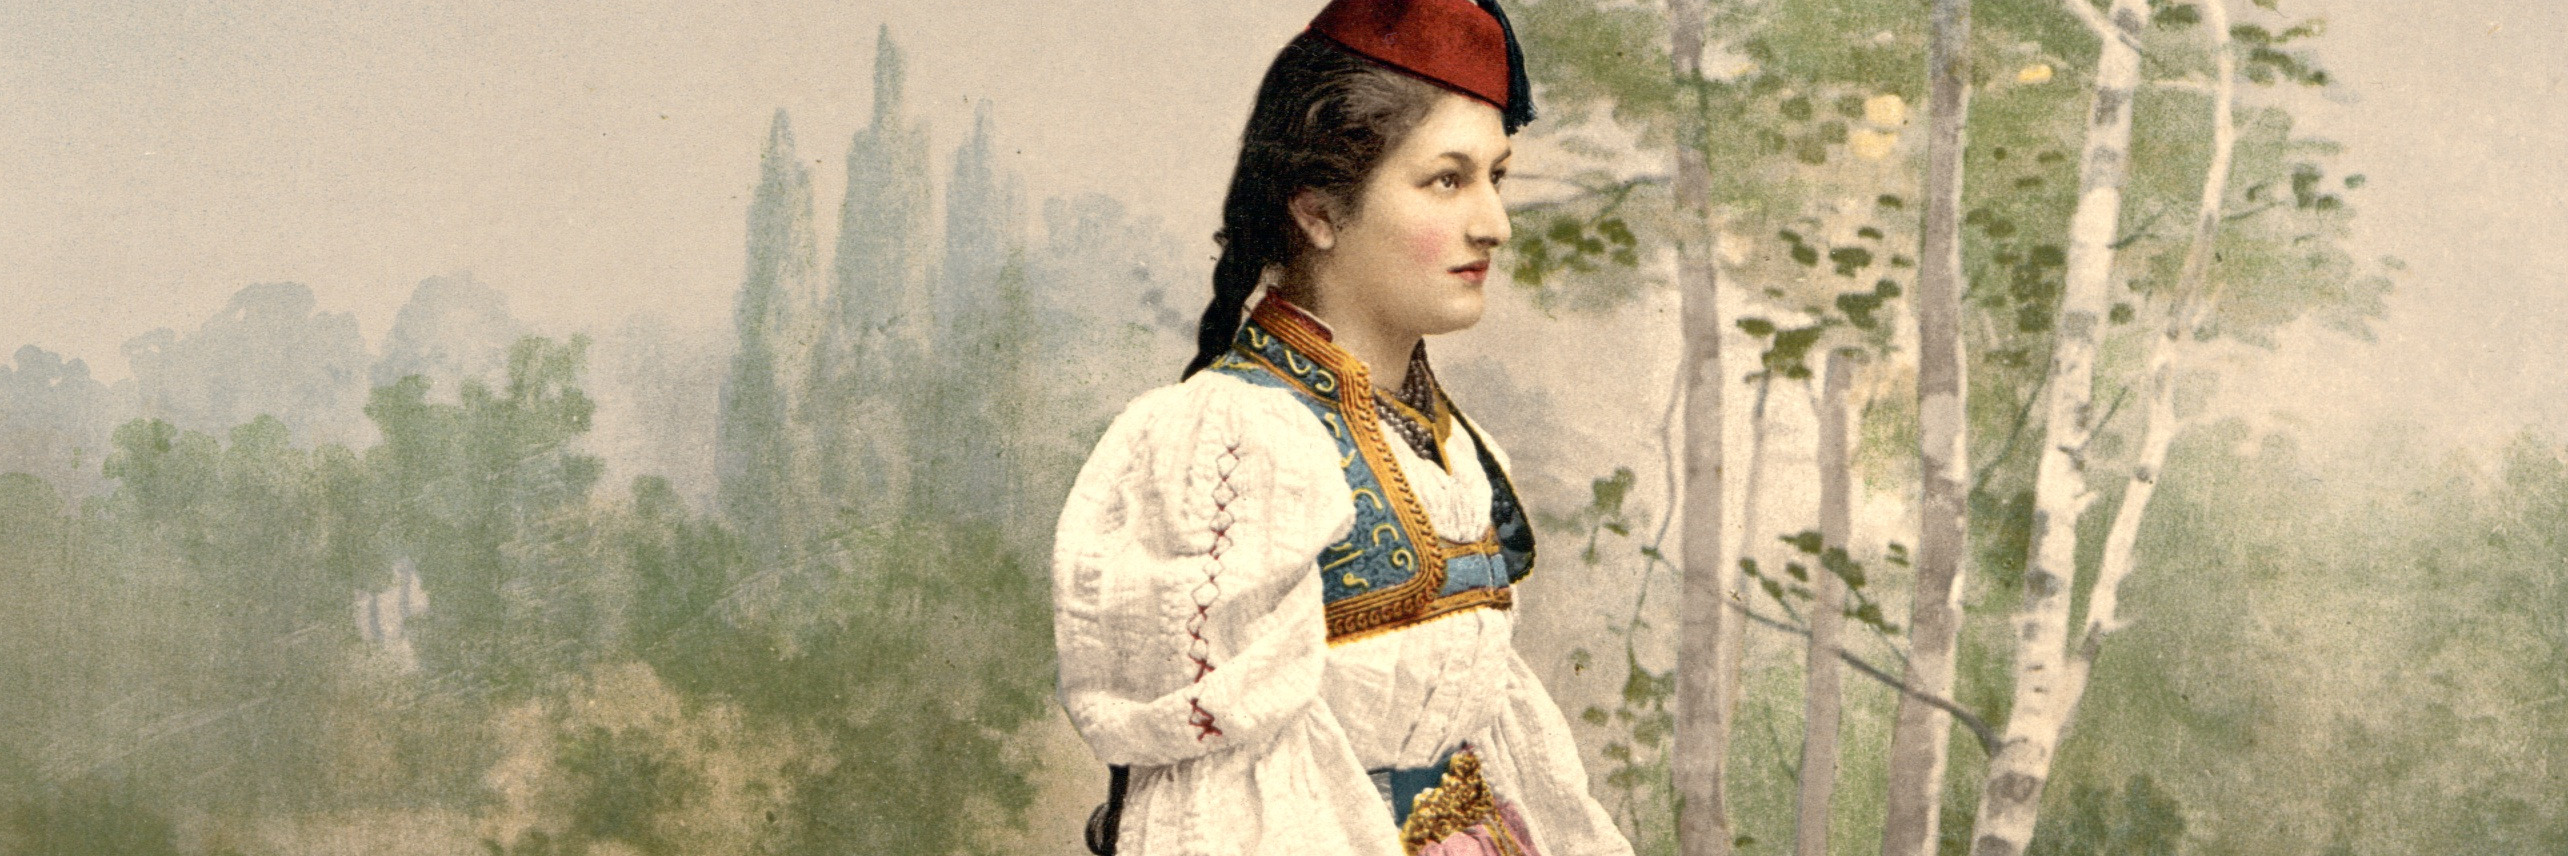 Сараевская красавица. Photochrom Print Collection, CC BY-SA 3.0